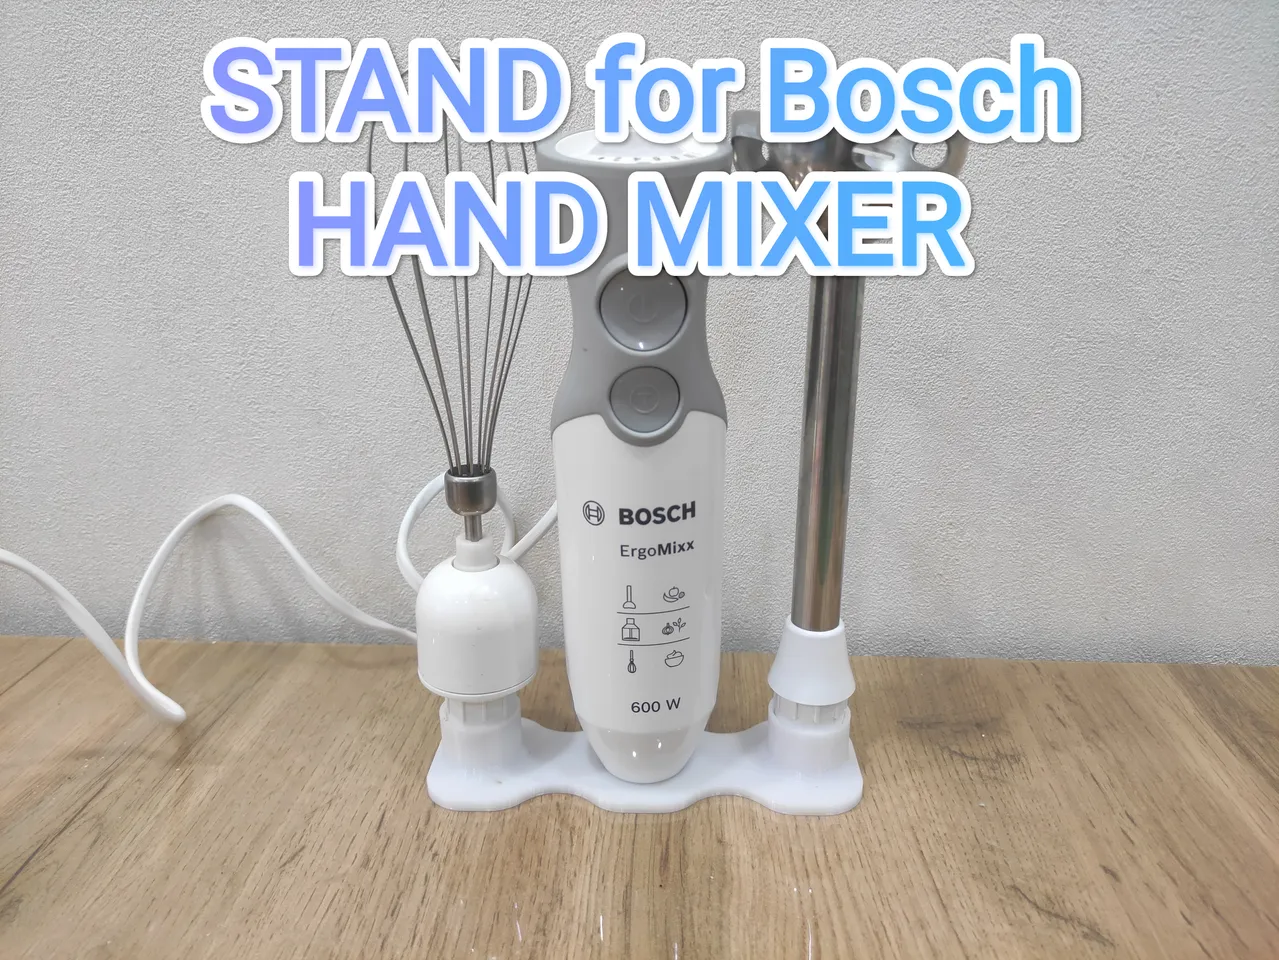 Hand mixer Bosch 3D model